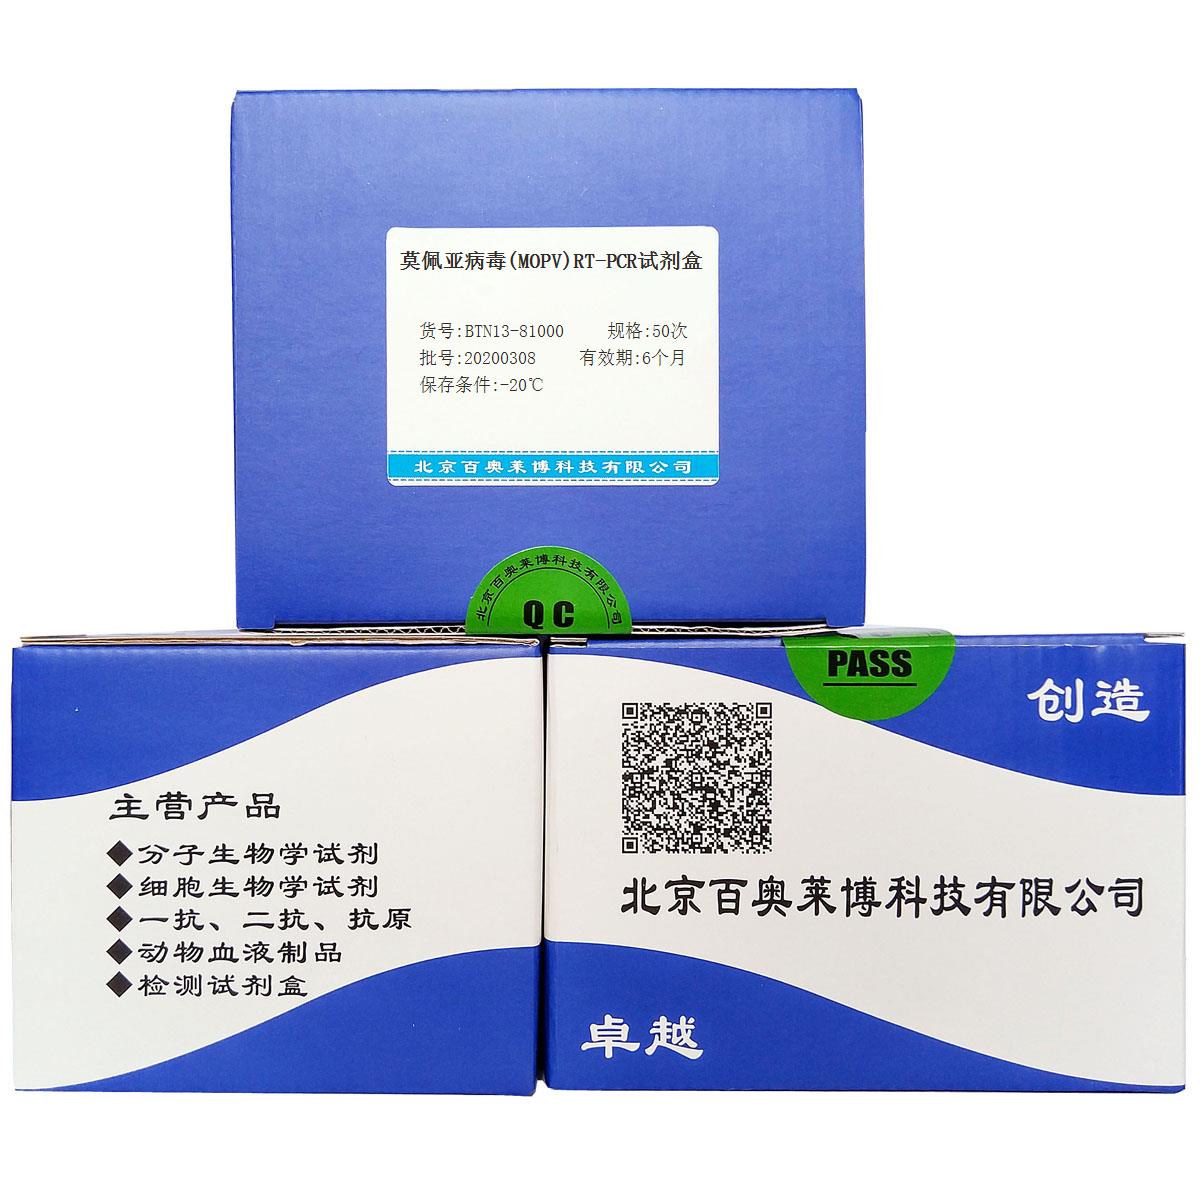 莫佩亚病毒(MOPV)RT-PCR试剂盒